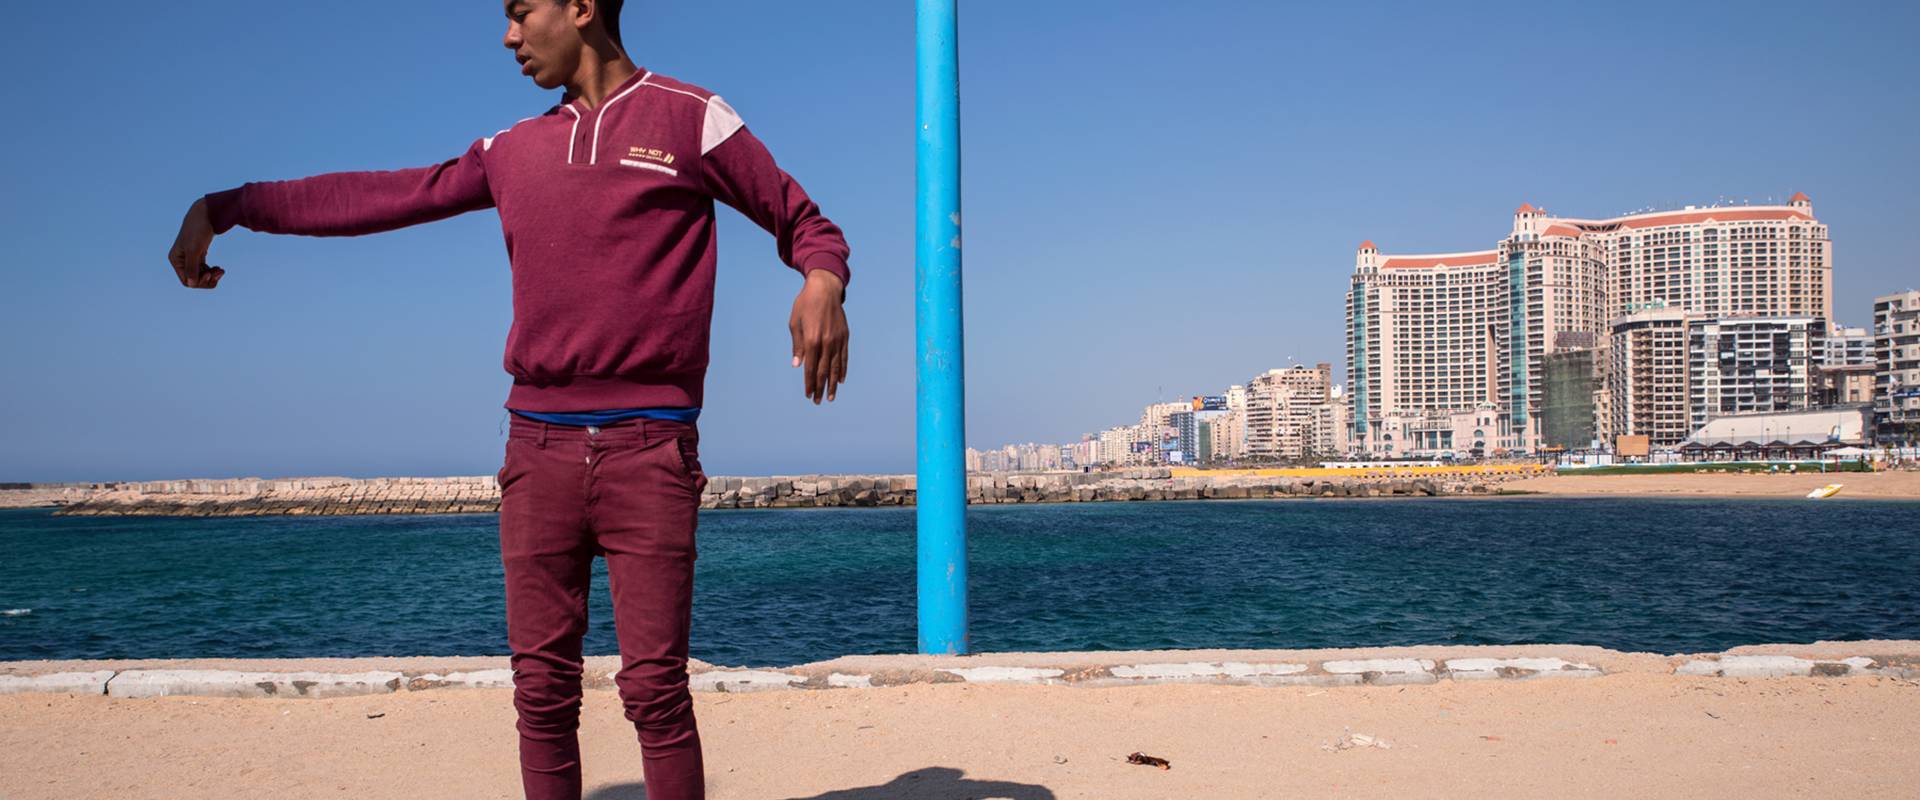 Der 17-jährige Saled wohnt in derselben Nachbarschaft und kommt zum Trainieren an den Strand. Er ist Mitglied der Tanzgruppe »Asphalt-Teufel«. Ihren Tanzstil bezeichnet Saled als eine Mischung aus »Knocking, Breaking und Zauberei«.